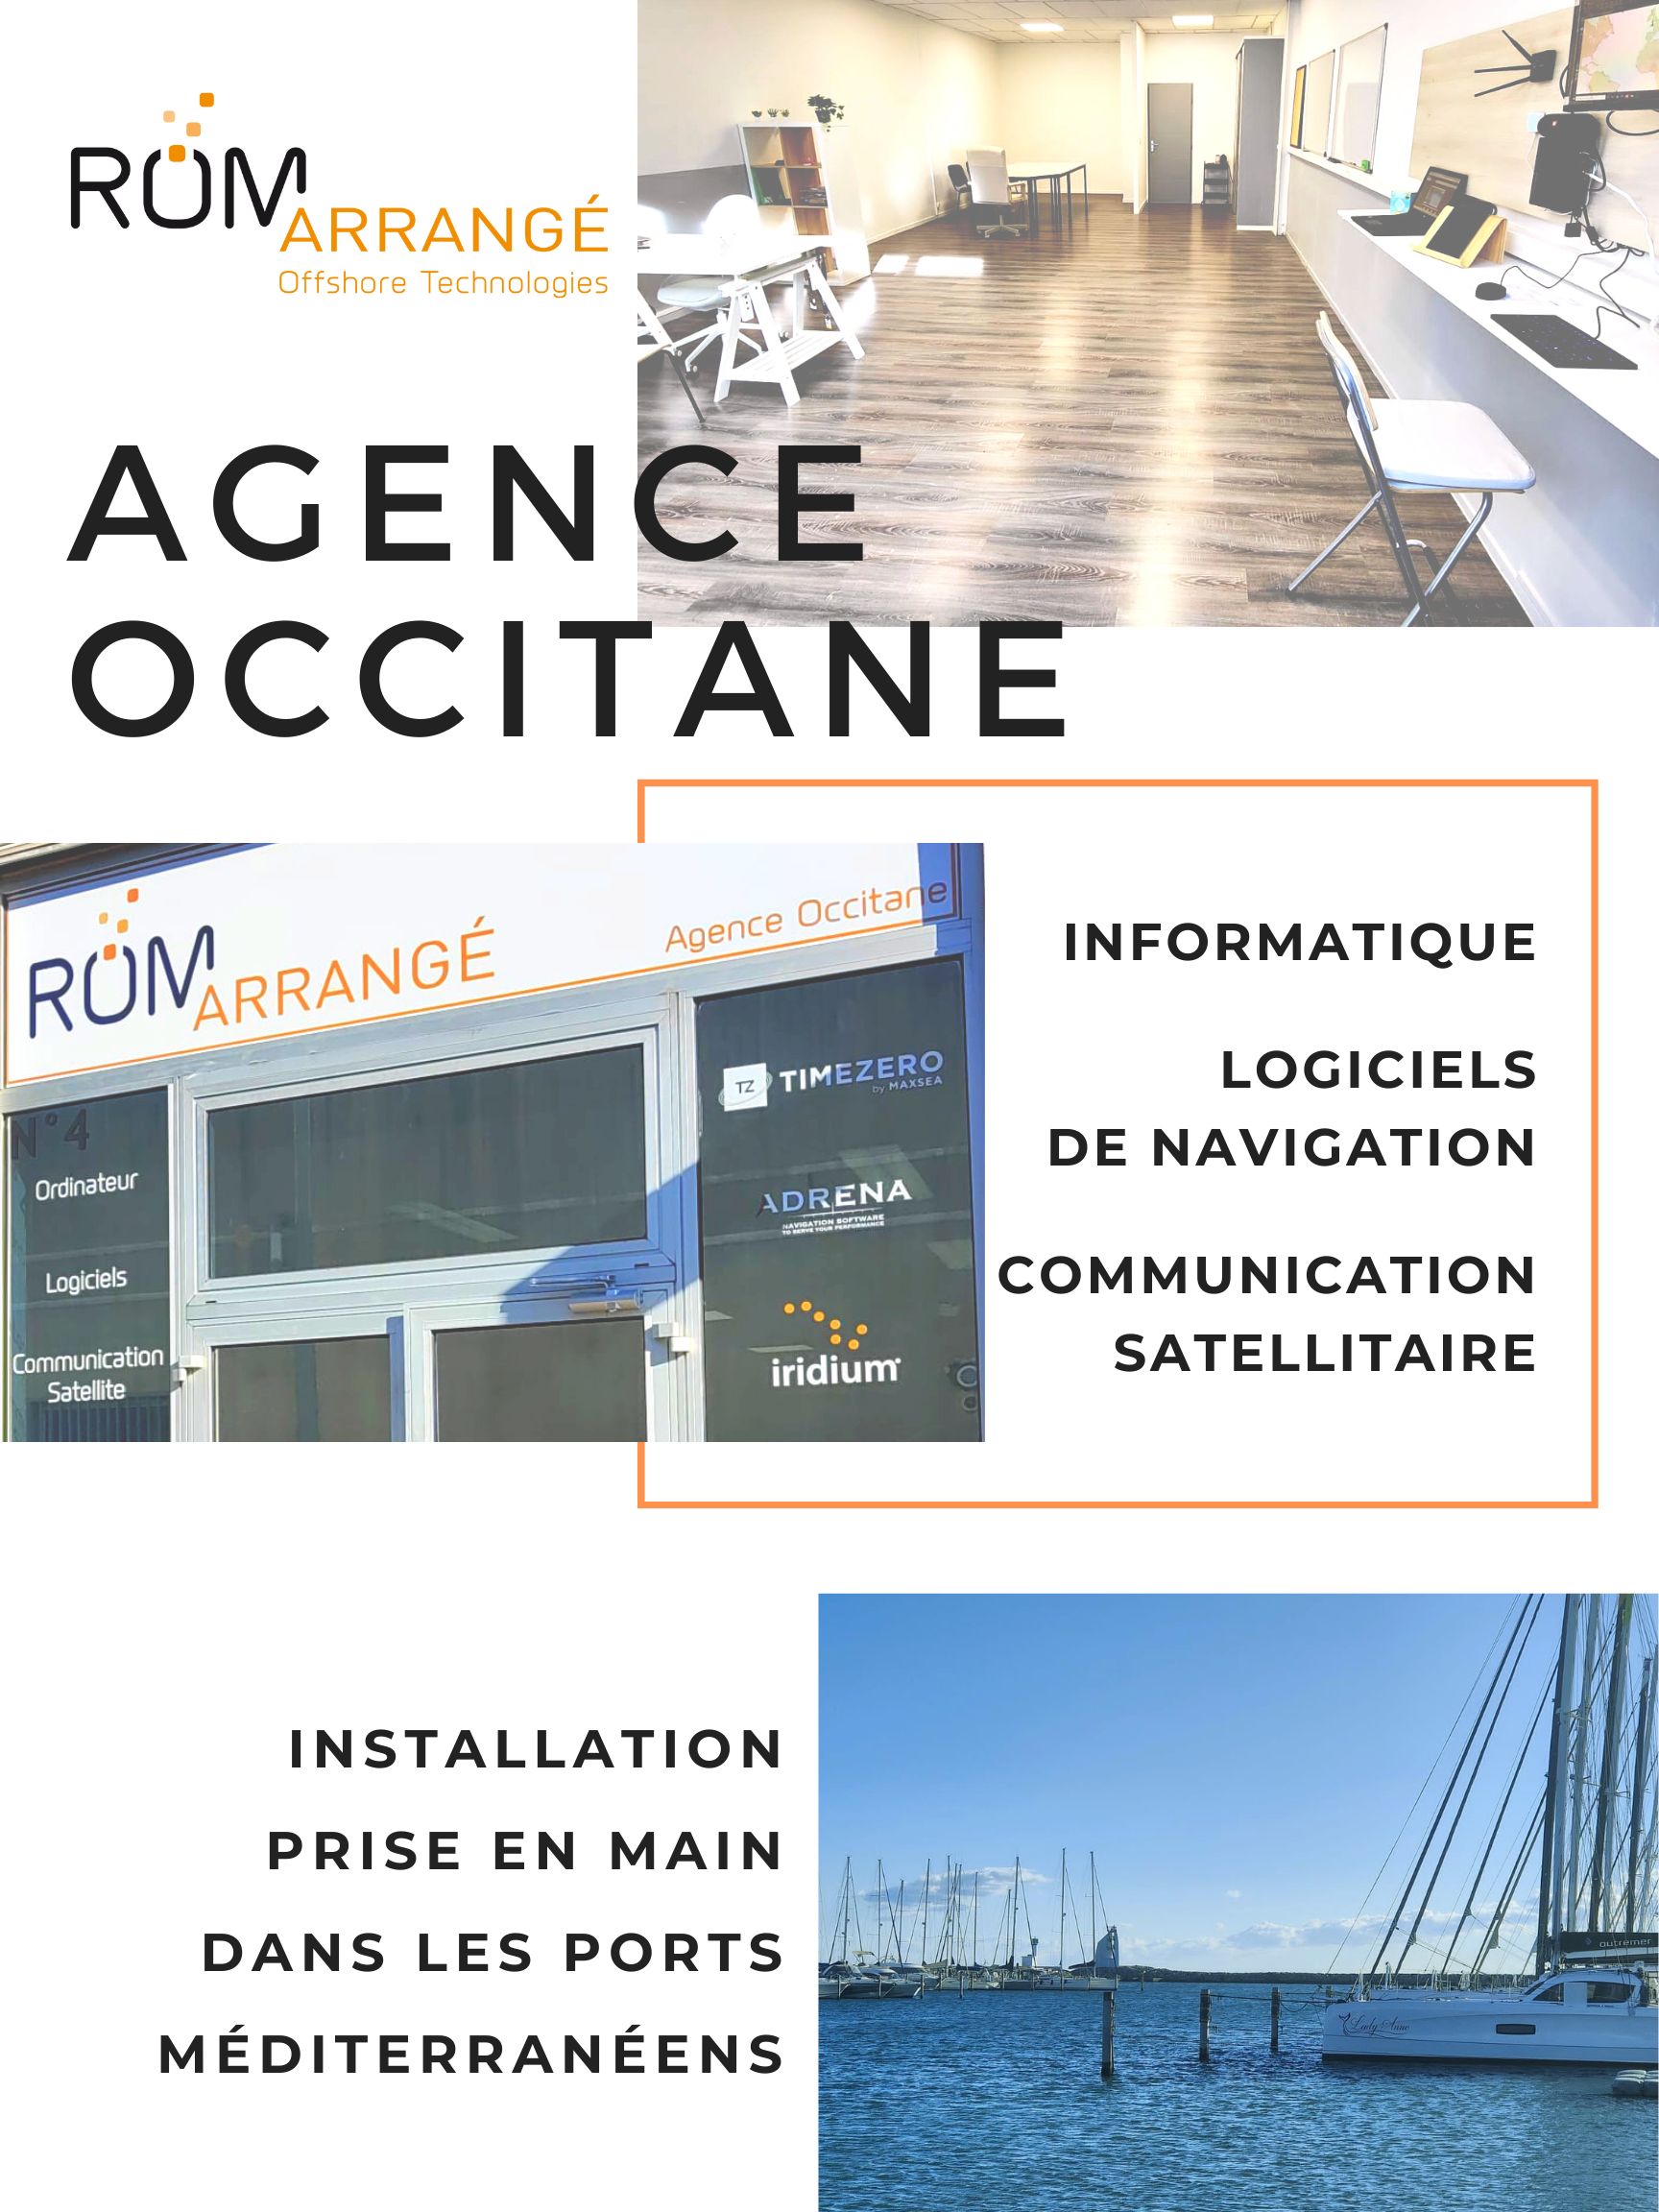 ROM-arrangé Agence Occitane